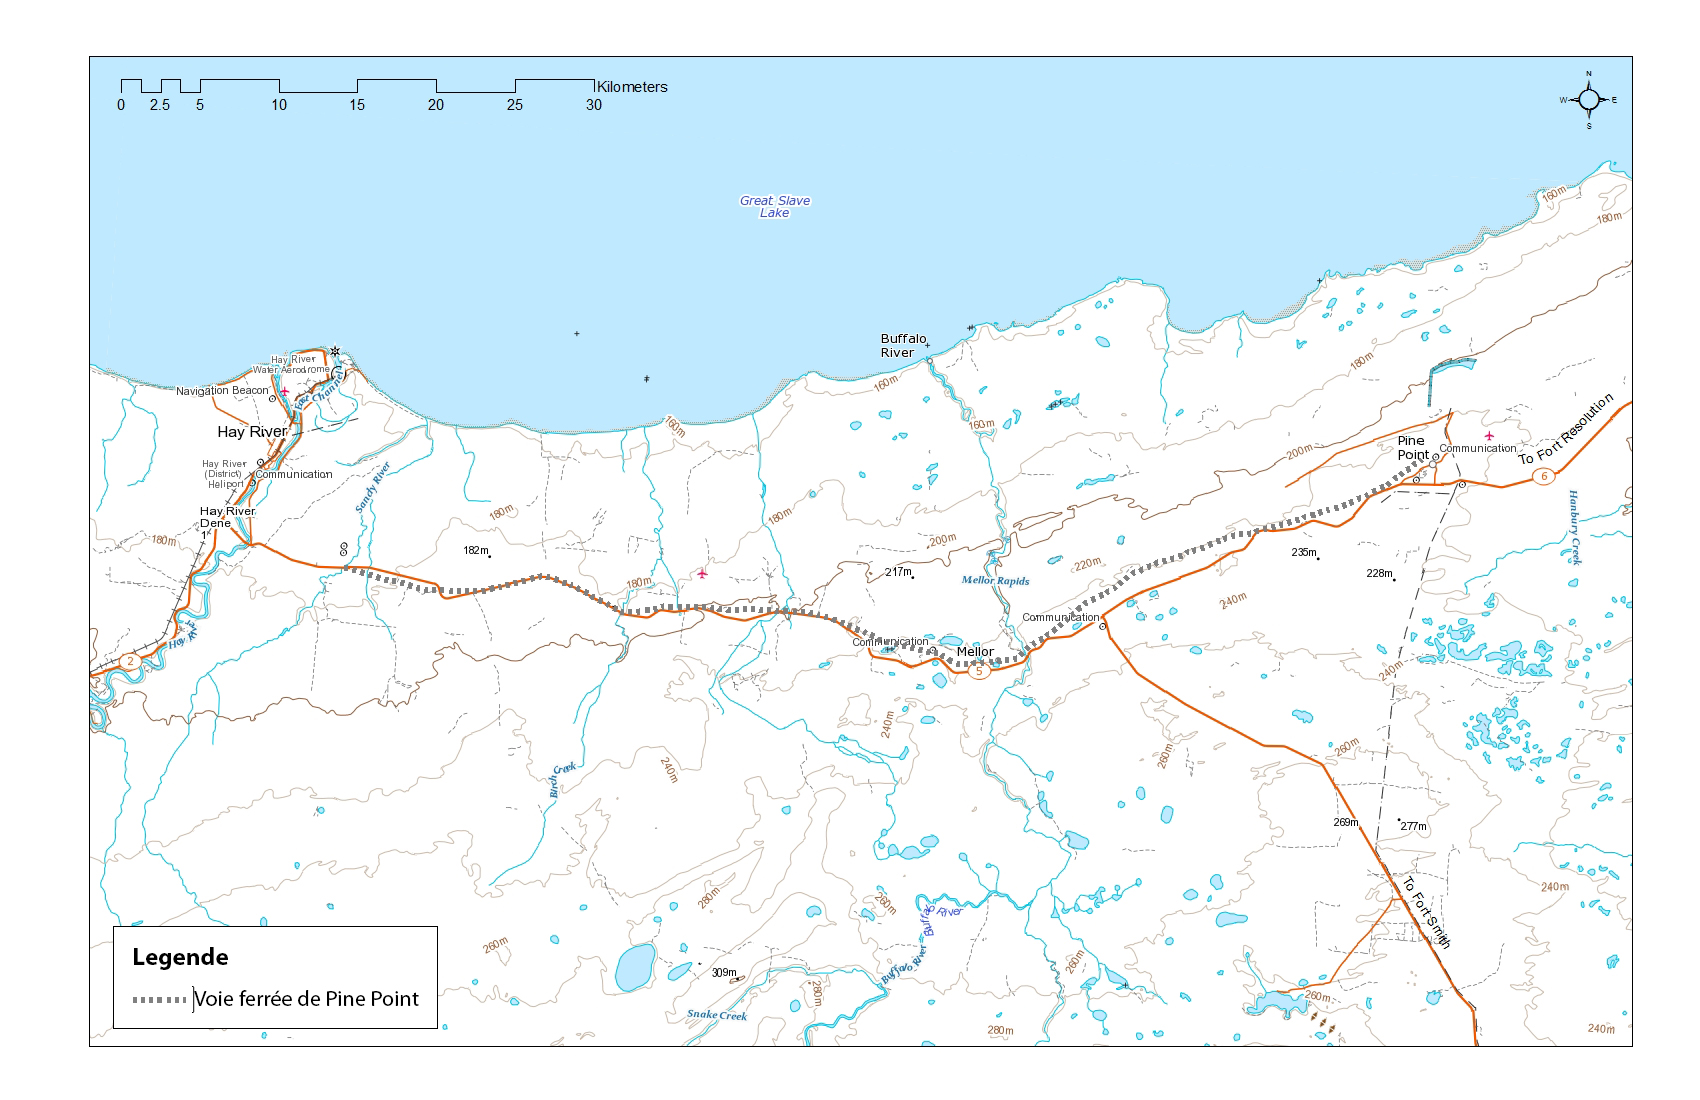 La carte montre la voie ferrée de l’ancienne mine Pine Point dans les Territoires du Nord-Ouest. Longue d’environ 80 km, la voie ferrée de Pine Point longe la rive sud du Grand lac des Esclaves dans les Territoires du Nord-Ouest (T.N.-O.). Son point le plus à l’ouest commence à l’est de Hay River pour aller jusqu’à la mine Pine Point désaffectée, près de Fort Resolution.